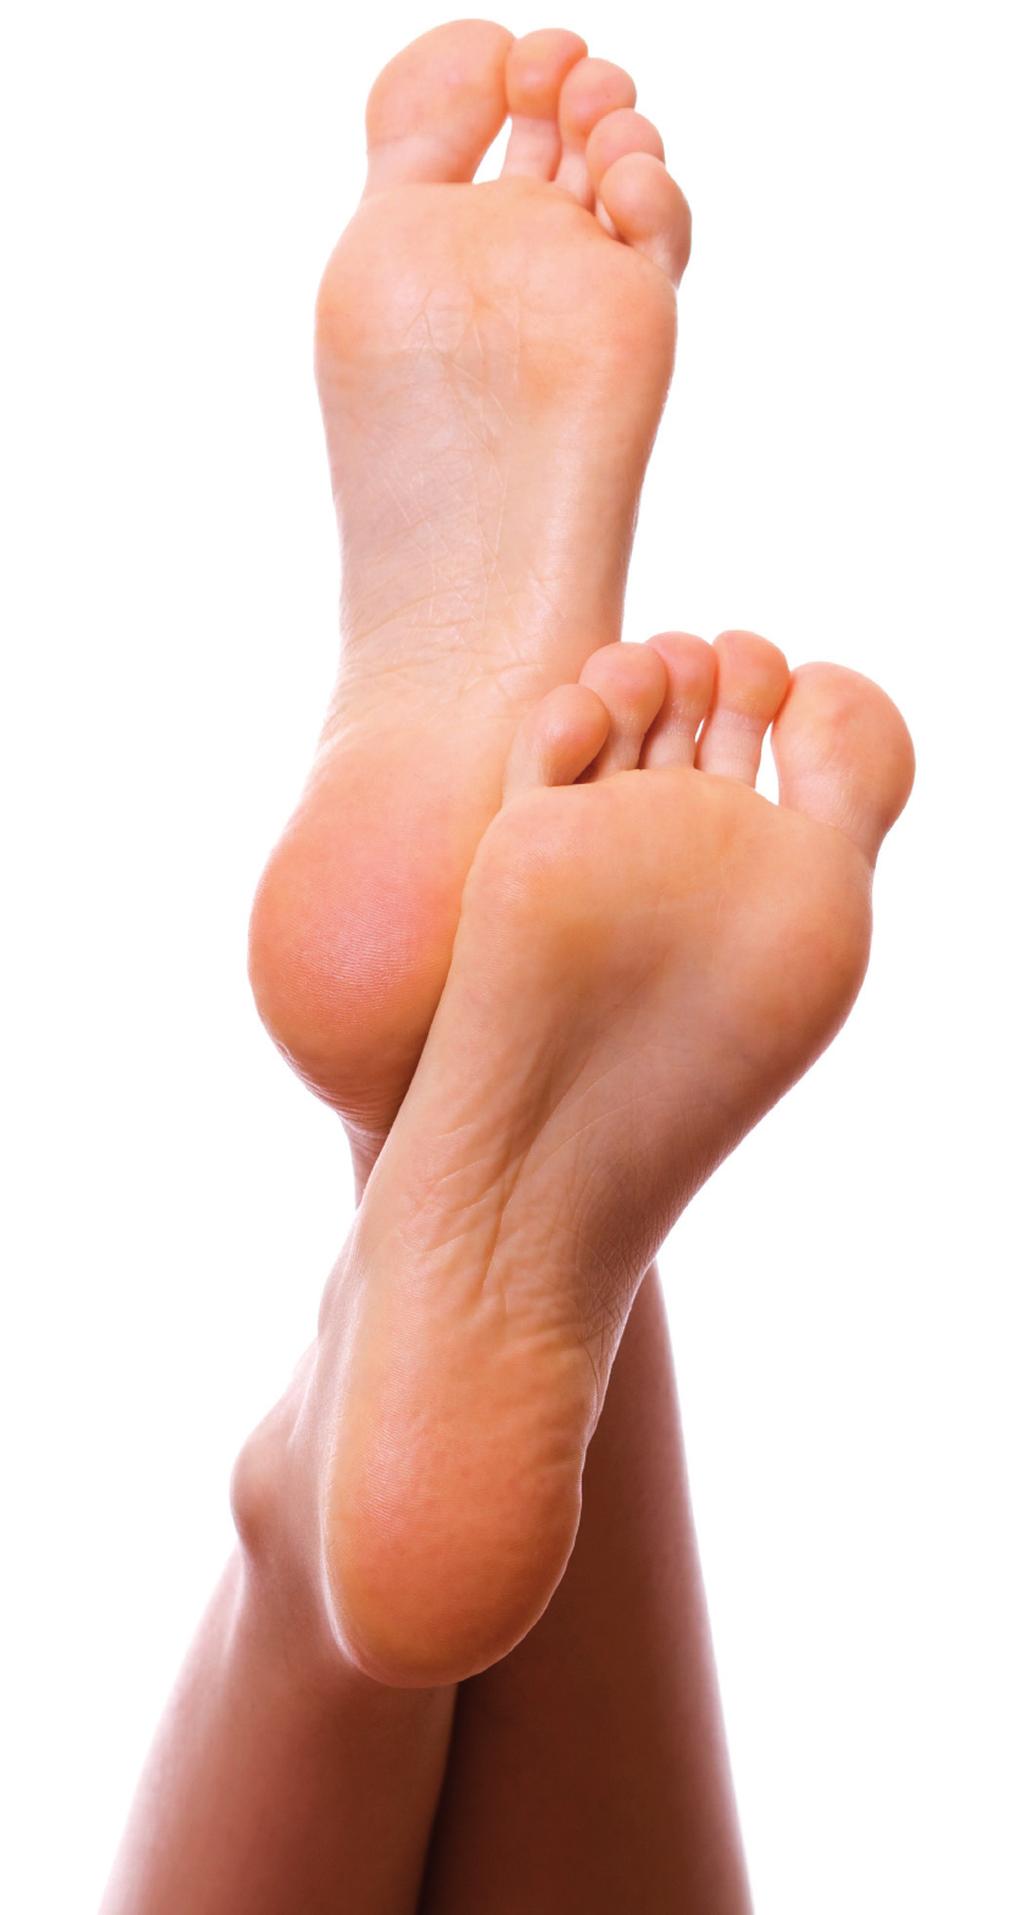 Im Verlauf bilden sich kleine Risse, in die leicht weitere Keime und auch bakterielle Erreger eindringen und zu Entzündungen führen können. Fußpilz beginnt meist zwischen den Zehen.